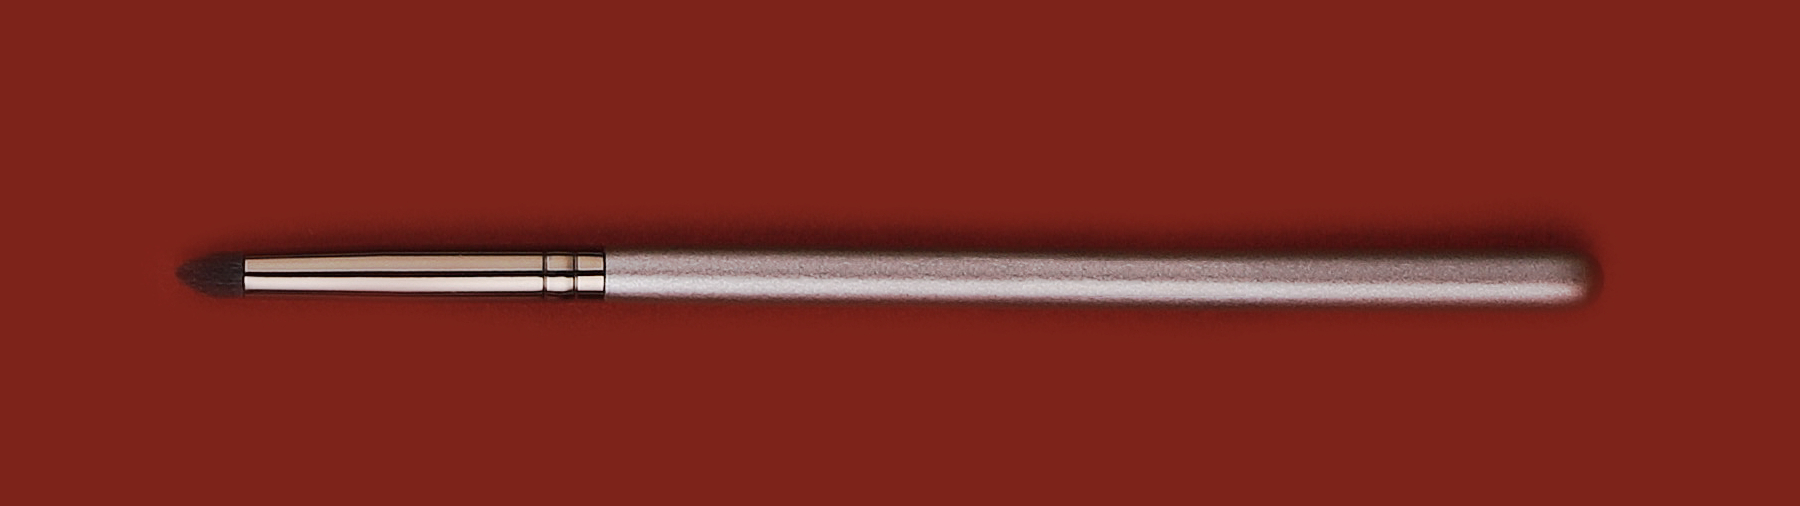 Een pencil brush op een donkerrode achtergrond make-upkwasten